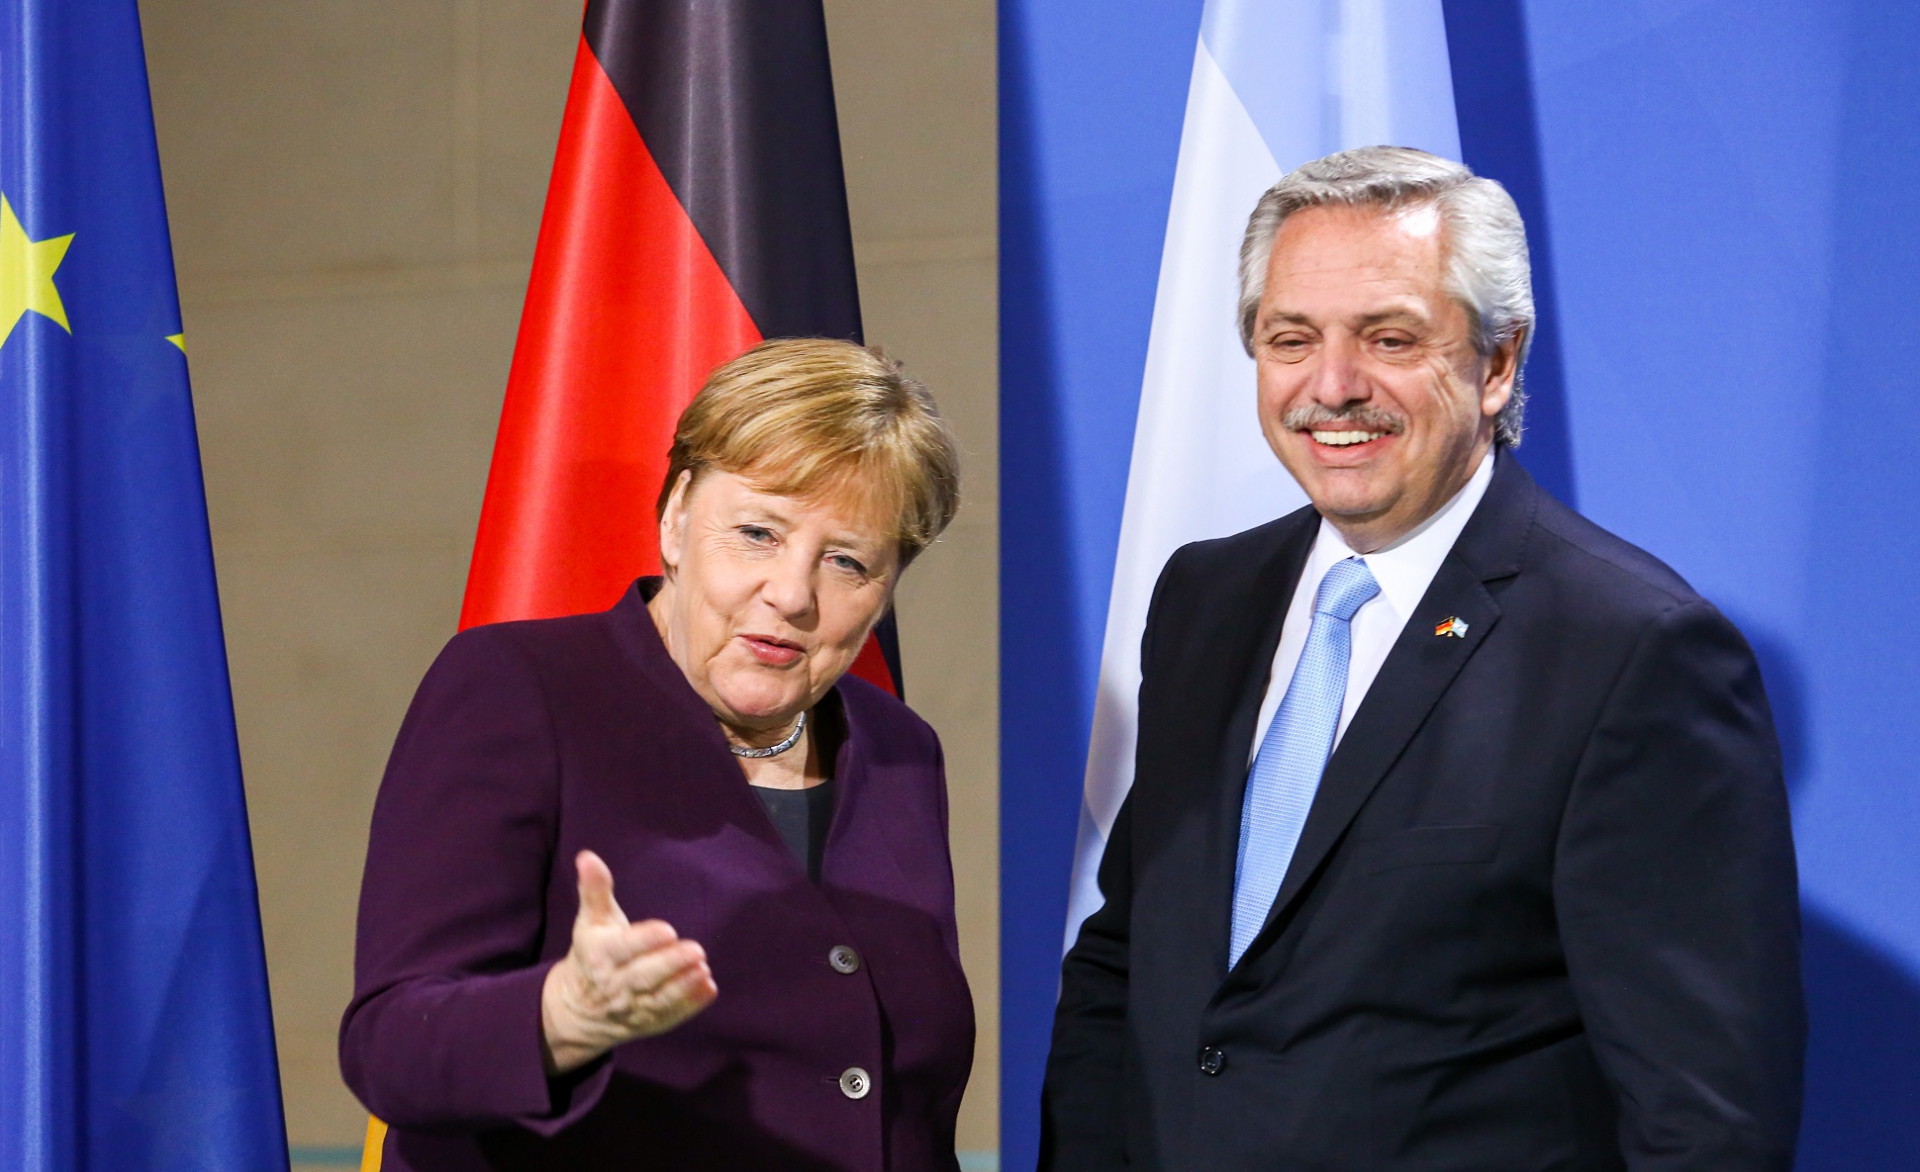 Deuda: frente a la bilateral con Angela Merkel, el kirchnerismo manda otra fuerte señal al Presidente